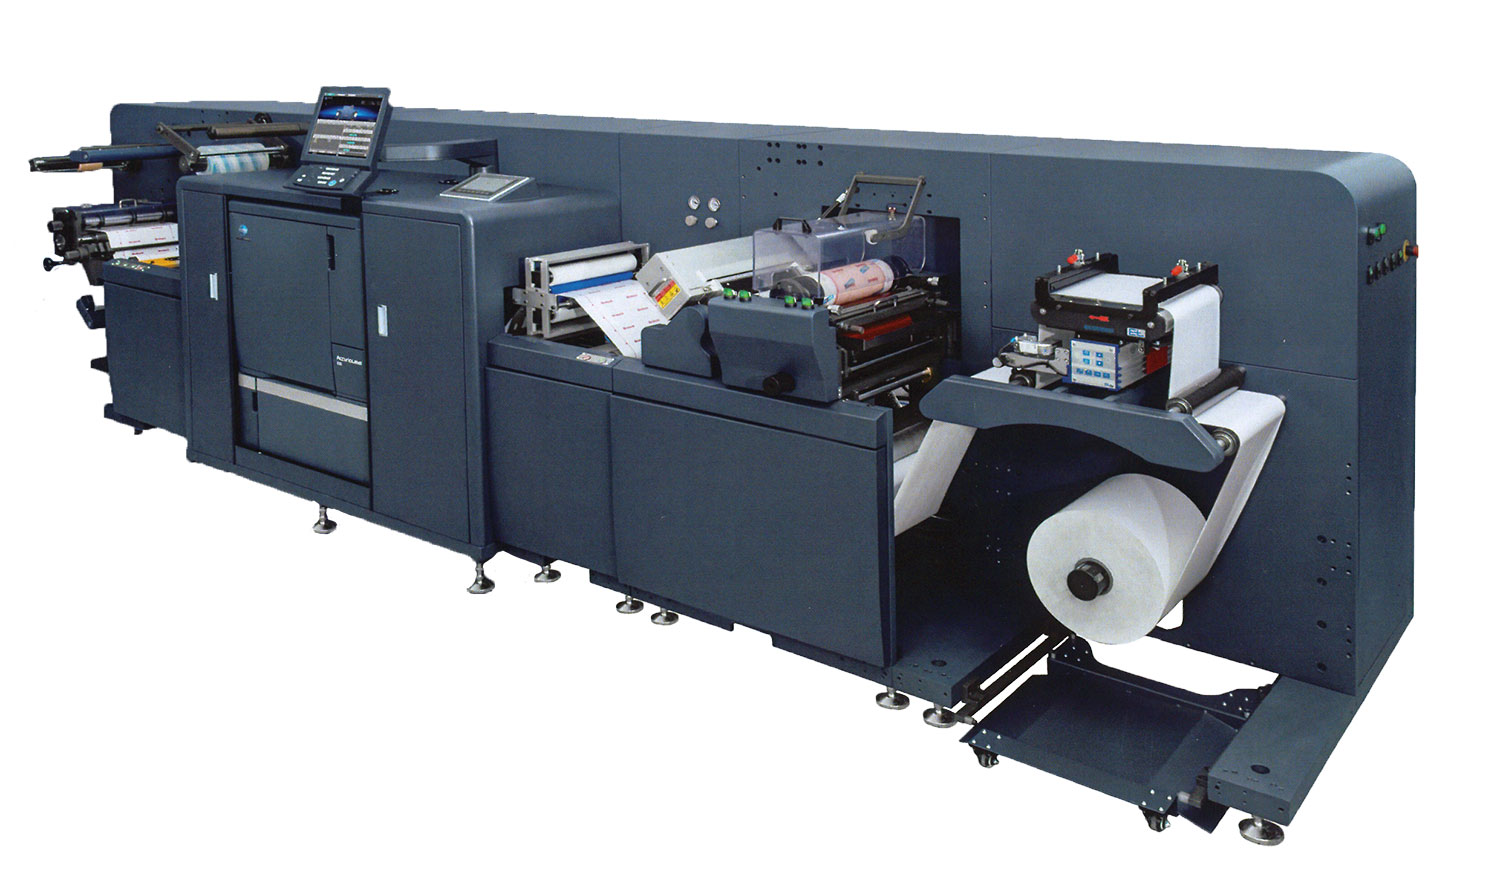 工業型數位印刷系統-數位標籤印刷機-AccurioLabel 230-康鈦科技